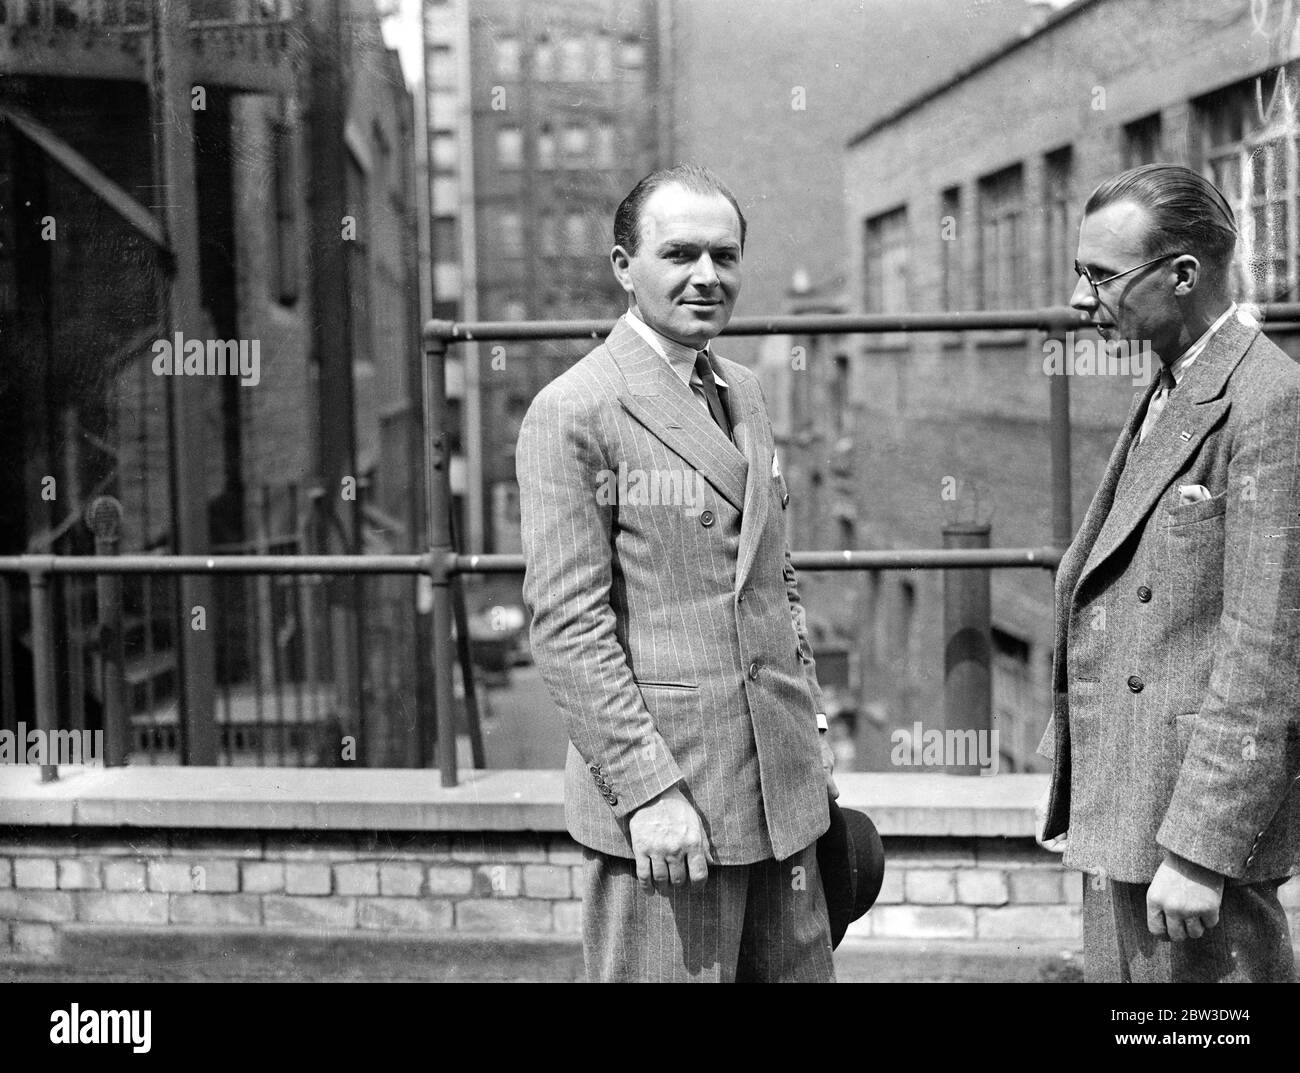 Gli showmen del mondo no 1 è un londoner . John Armstrong (sinistra) , un esperto di pubblicità londinese gli ha conferito il titolo di' showmen del mondo n. 1 dall' America. 7 agosto 1935 Foto Stock